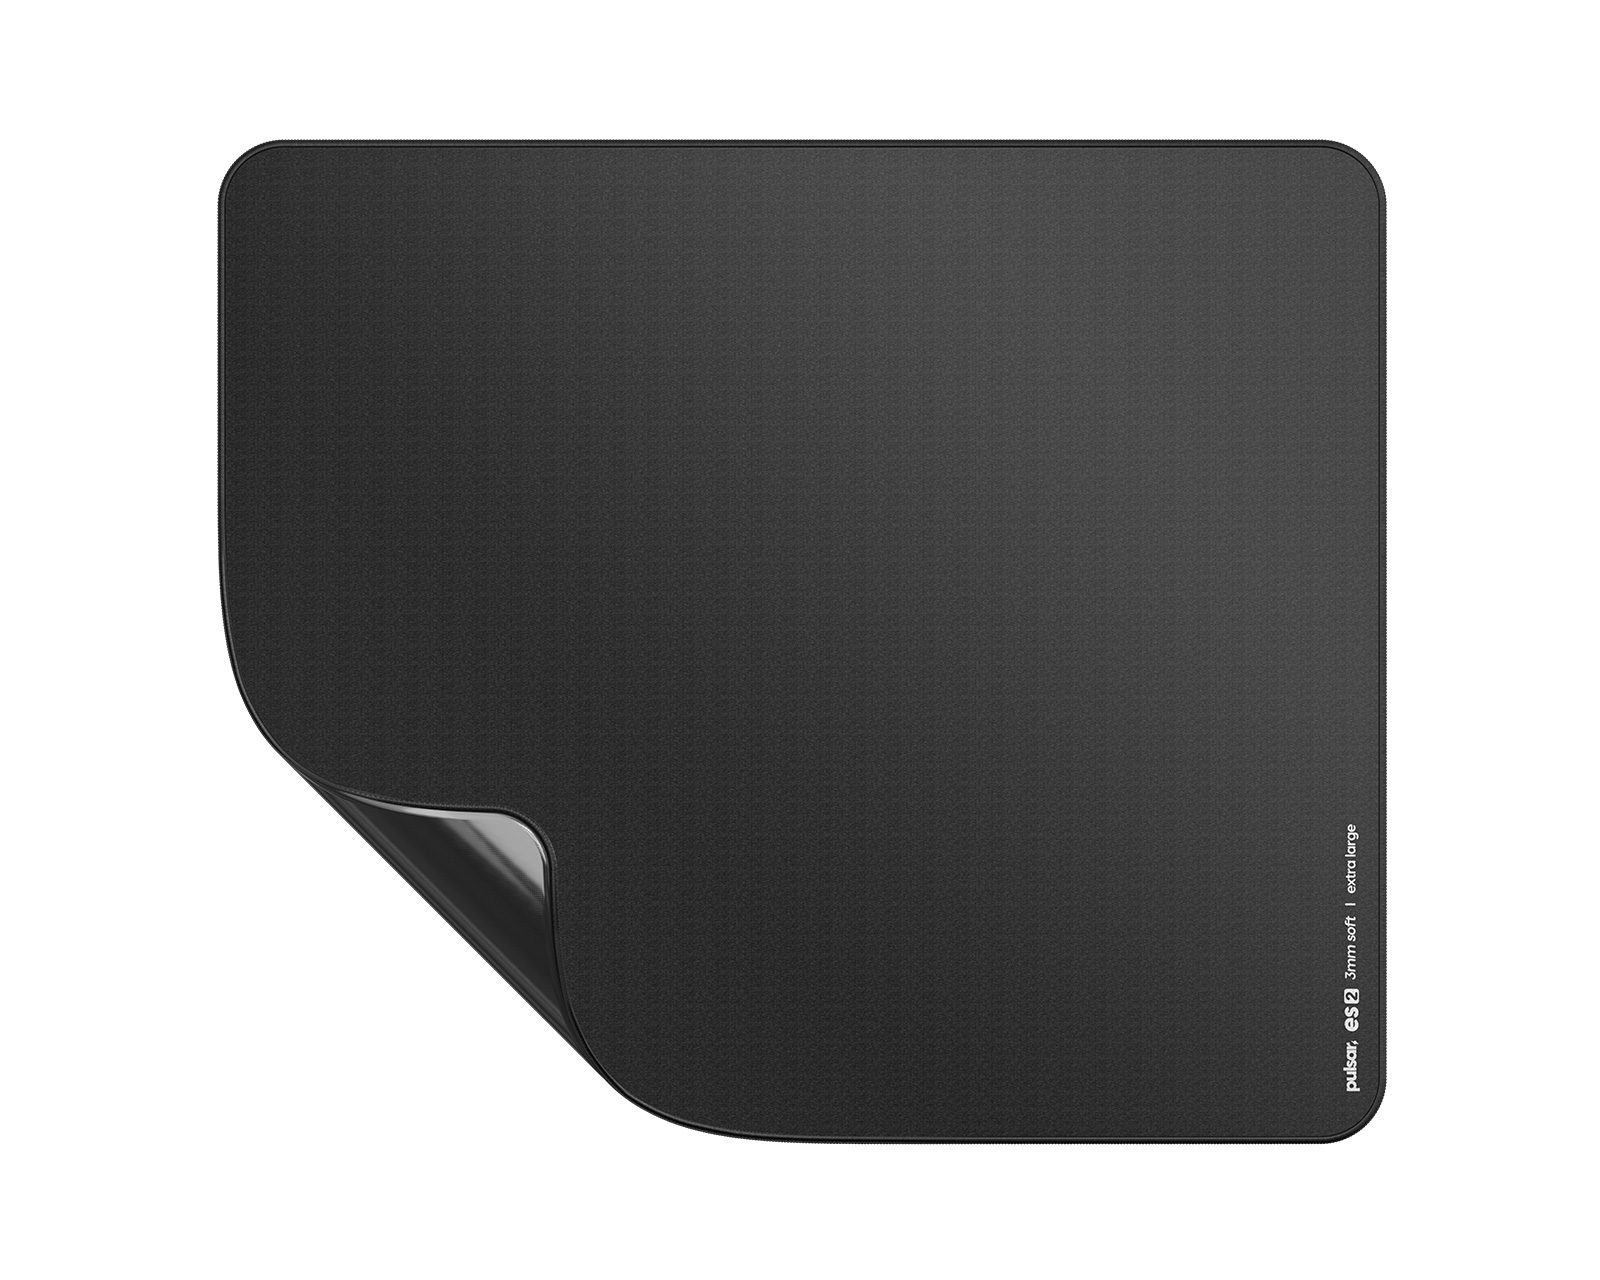 Pulsar ES2 Gaming Mousepad - XL - MaxGaming.com